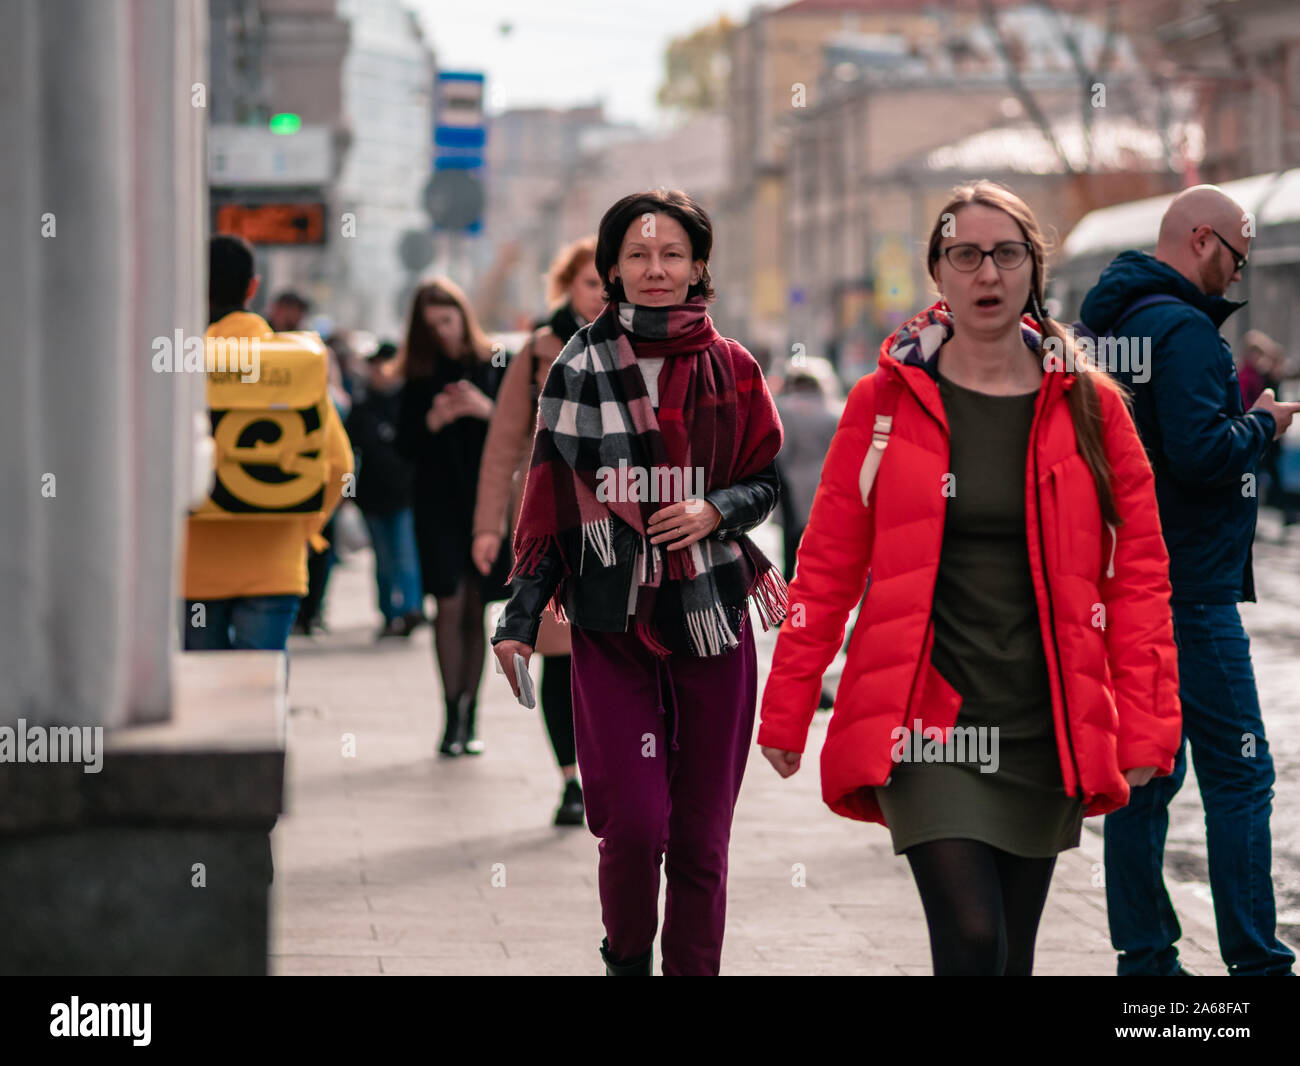 Moscú, Rusia 19 de octubre de 2019: Una mujer bufanda camina en medio de una multitud de personas vestidas de demi-ropa temporada a lo largo de la calle. Otoño cálido